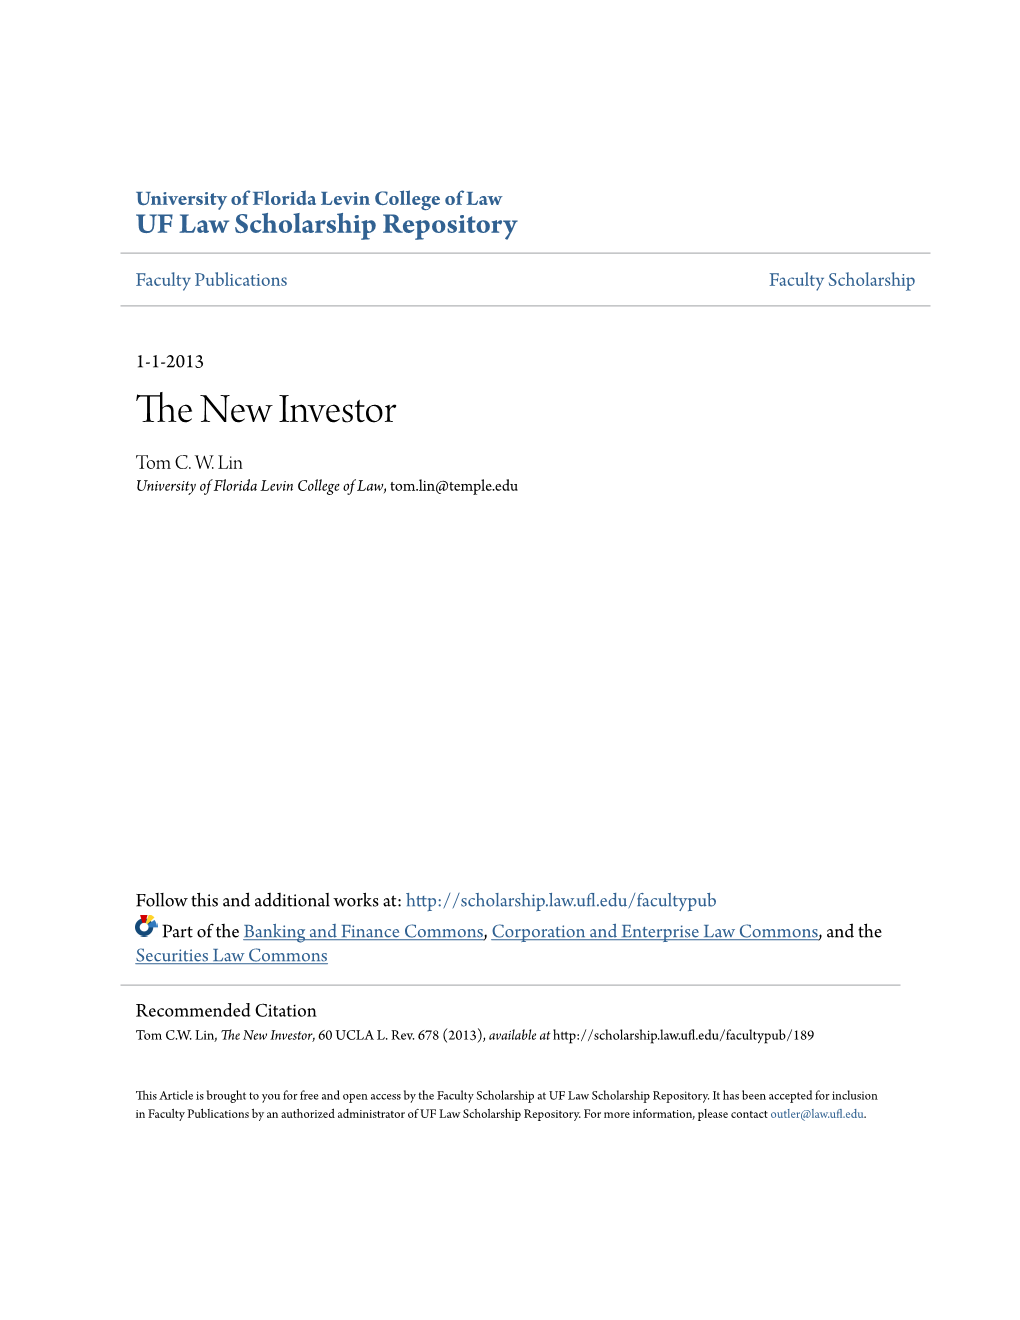 The New Investor, 60 UCLA L